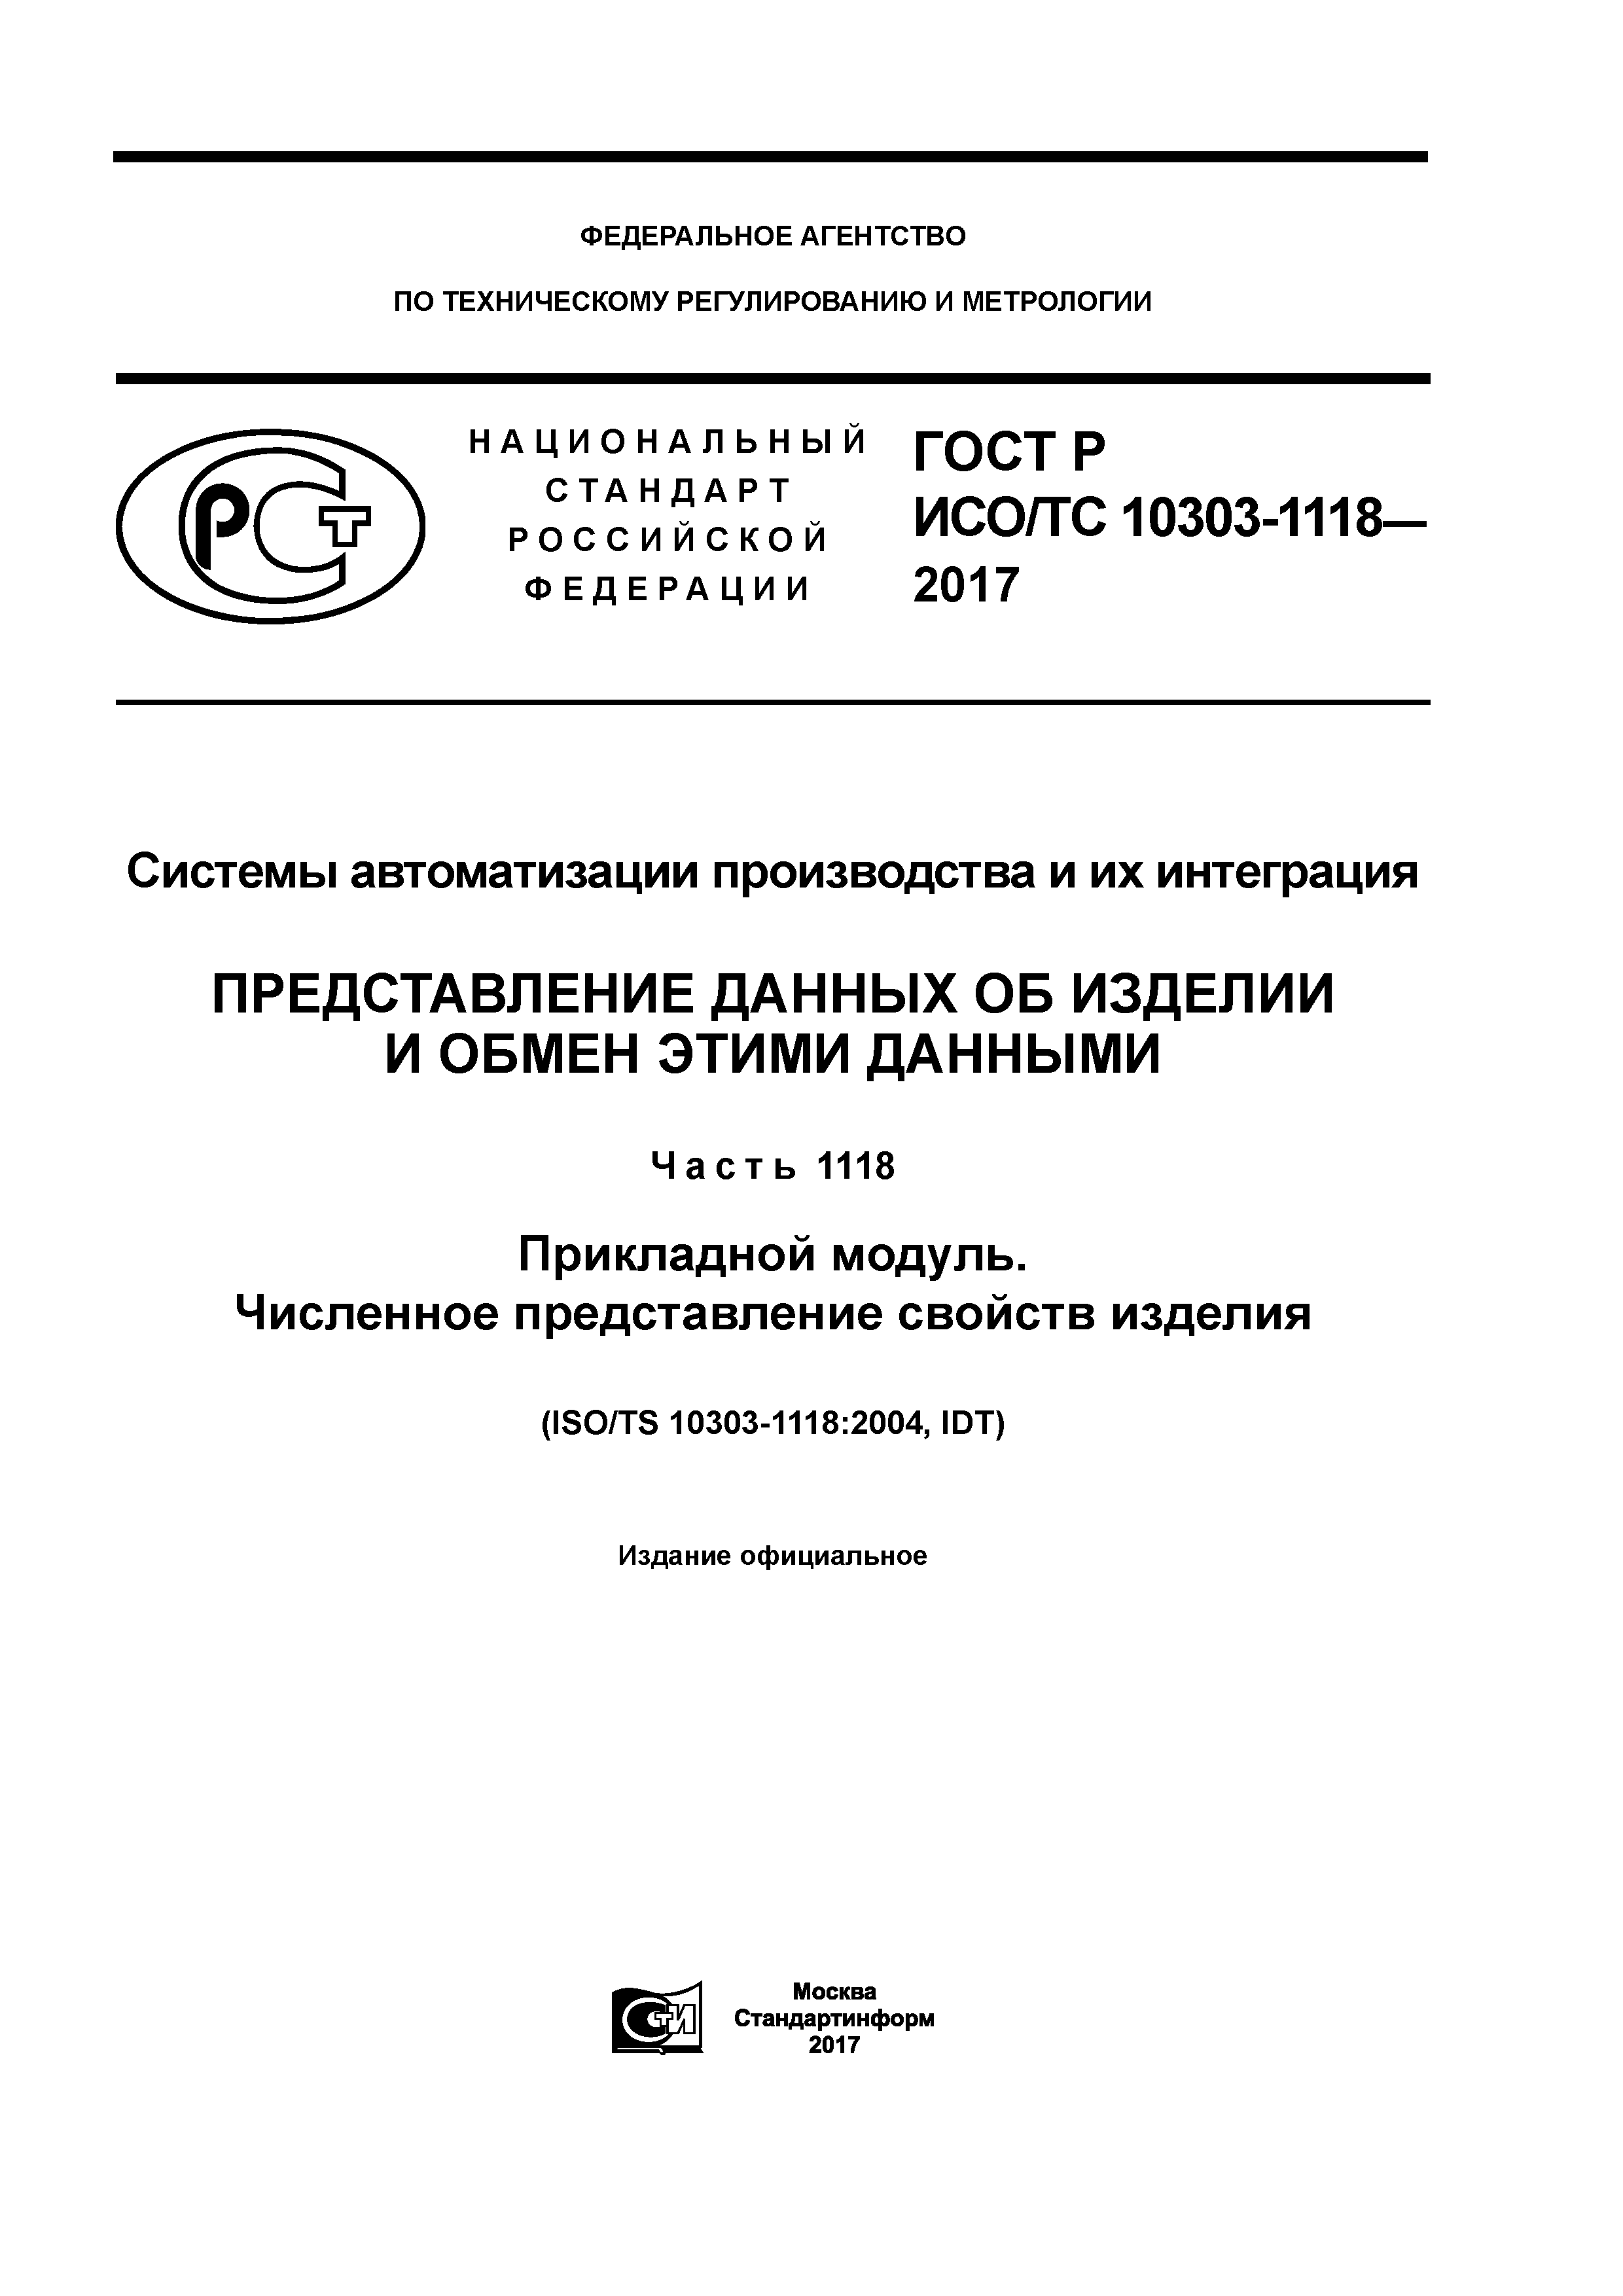 ГОСТ Р ИСО/ТС 10303-1118-2017